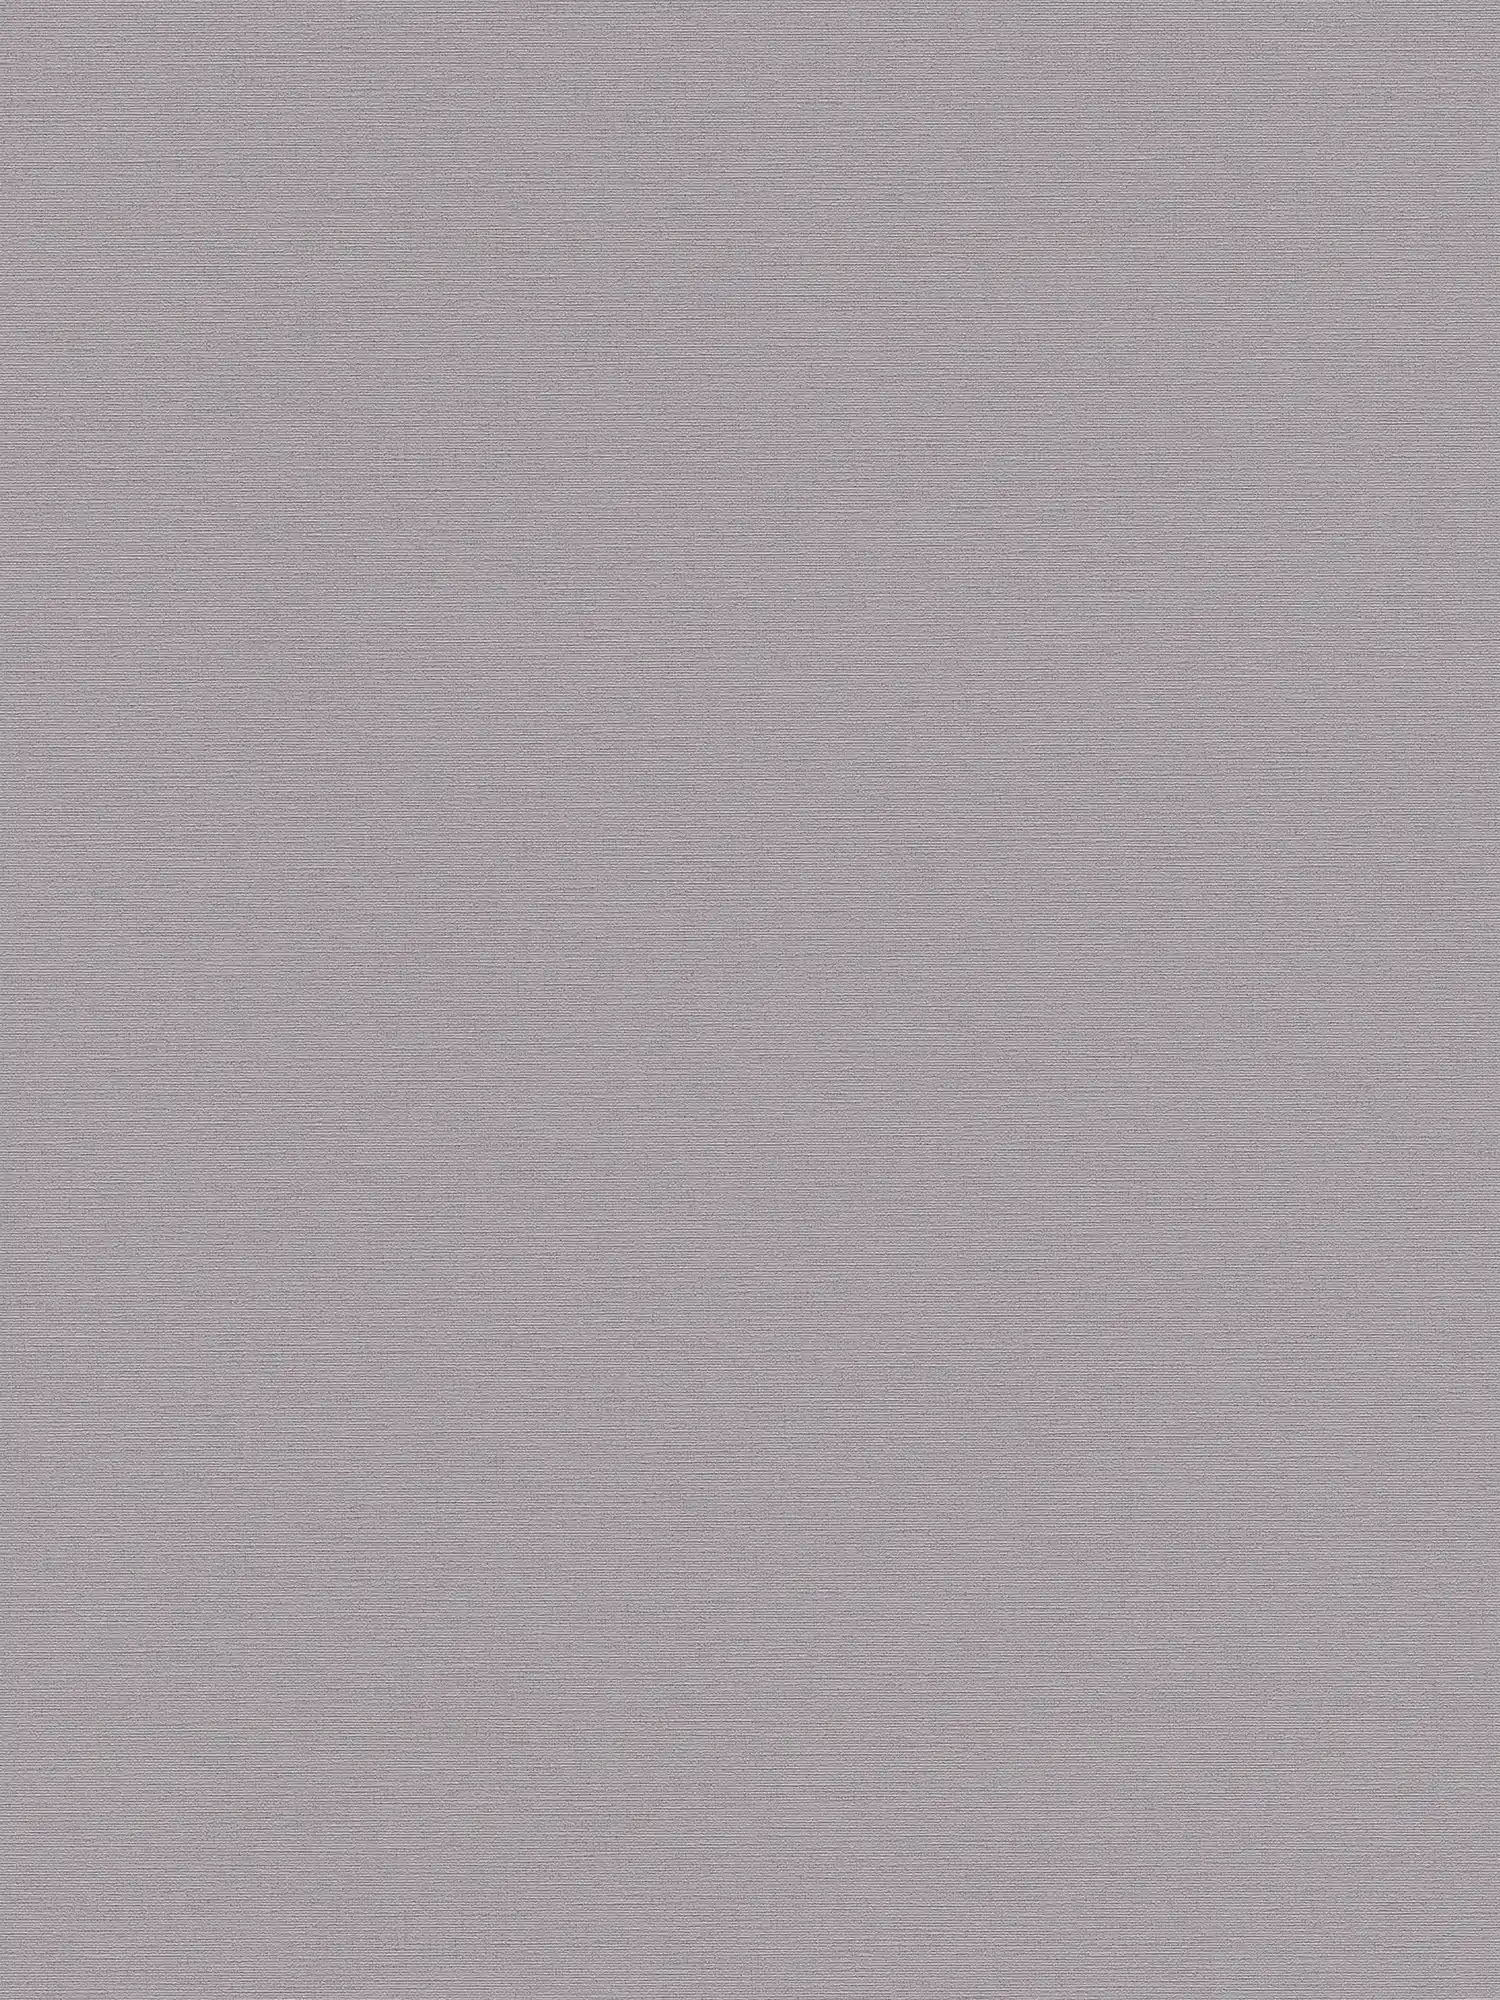 Papel pintado liso no tejido con aspecto de lino - gris oscuro
